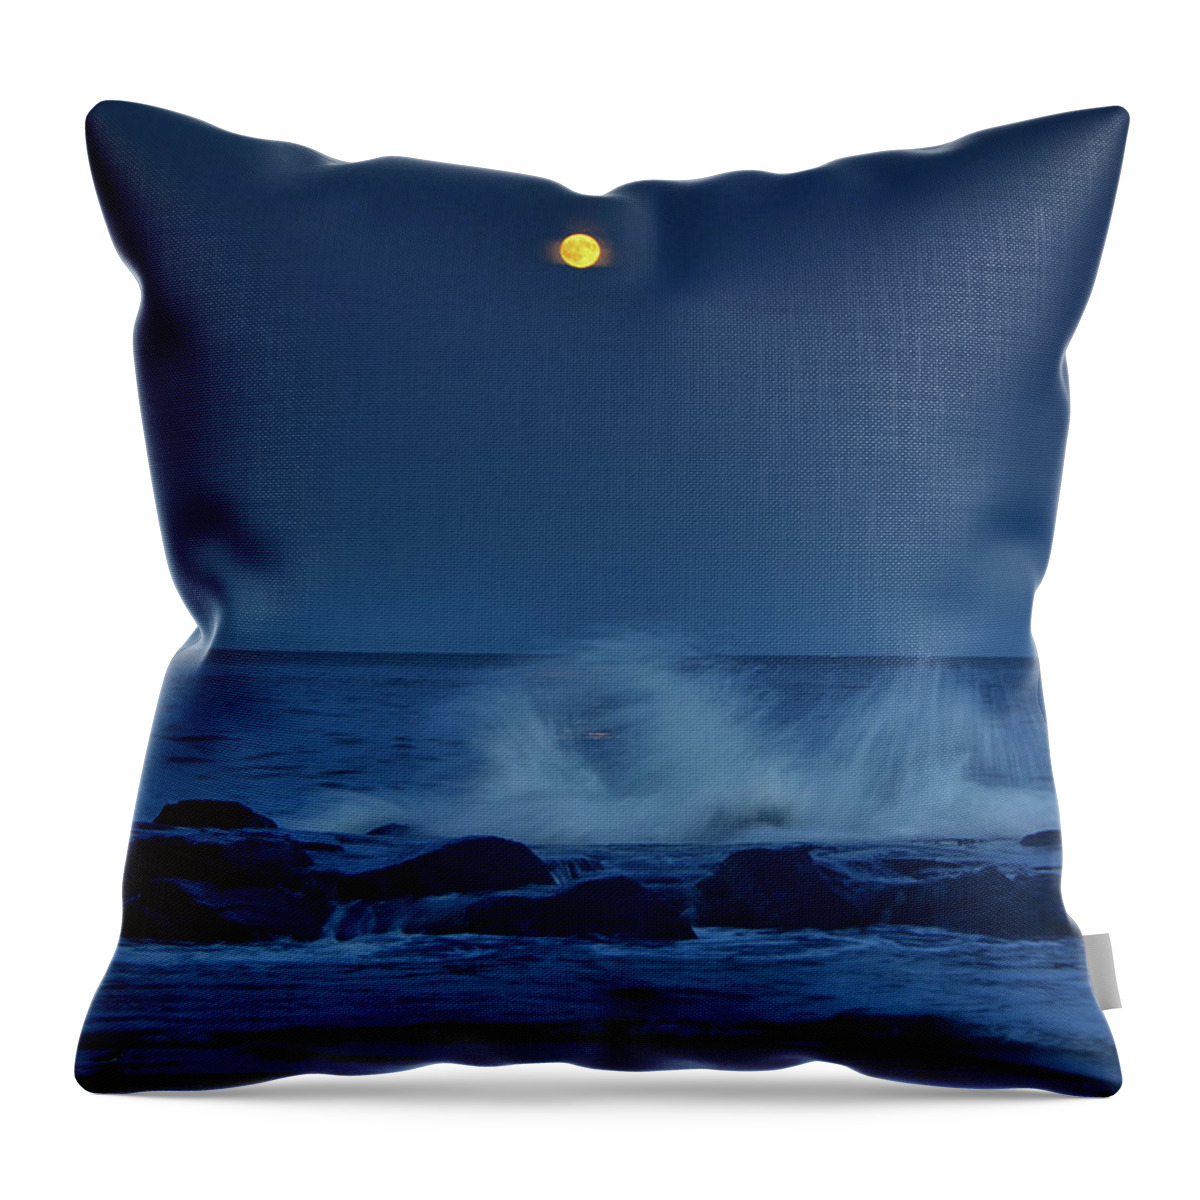 Allenhurst Beach Throw Pillow featuring the photograph Allenhurt Beach by Raymond Salani III